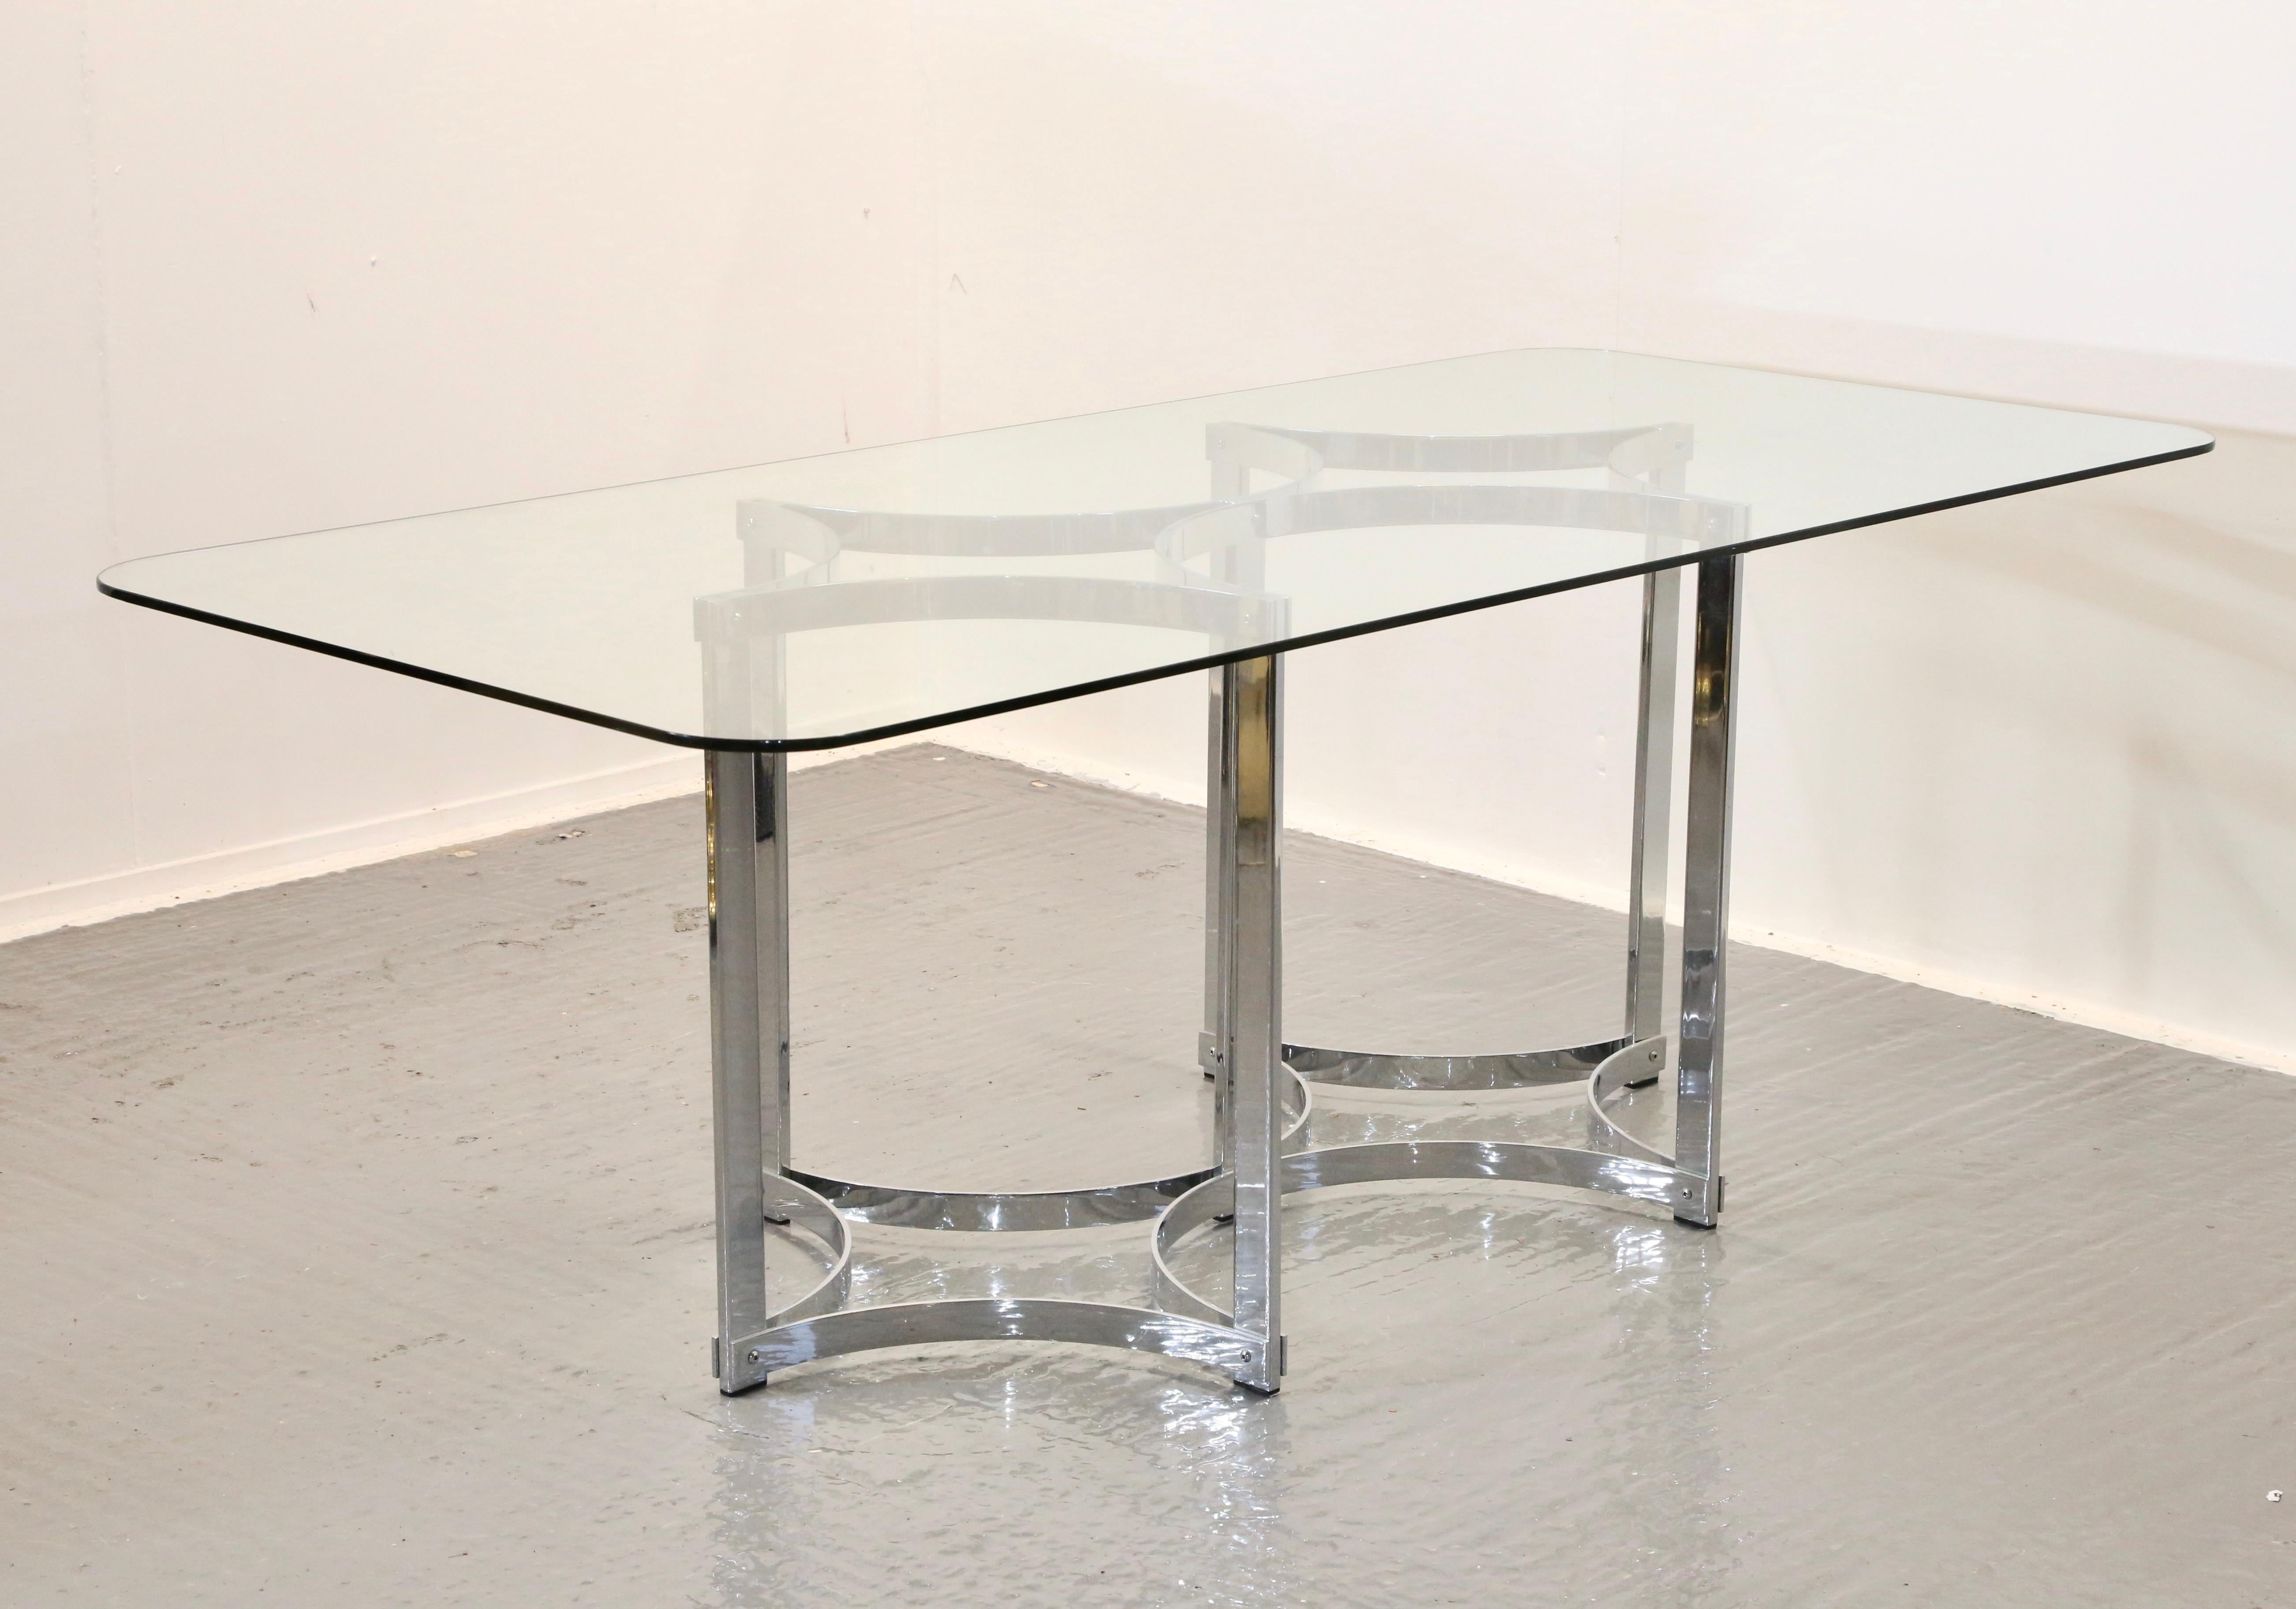 Conçue par Richard Young, propriétaire du fabricant britannique haut de gamme Merrow Associates dans les années 1970, cette table de salle à manger très décorative présente un grand plateau rectangulaire en verre trempé transparent, reposant sur un